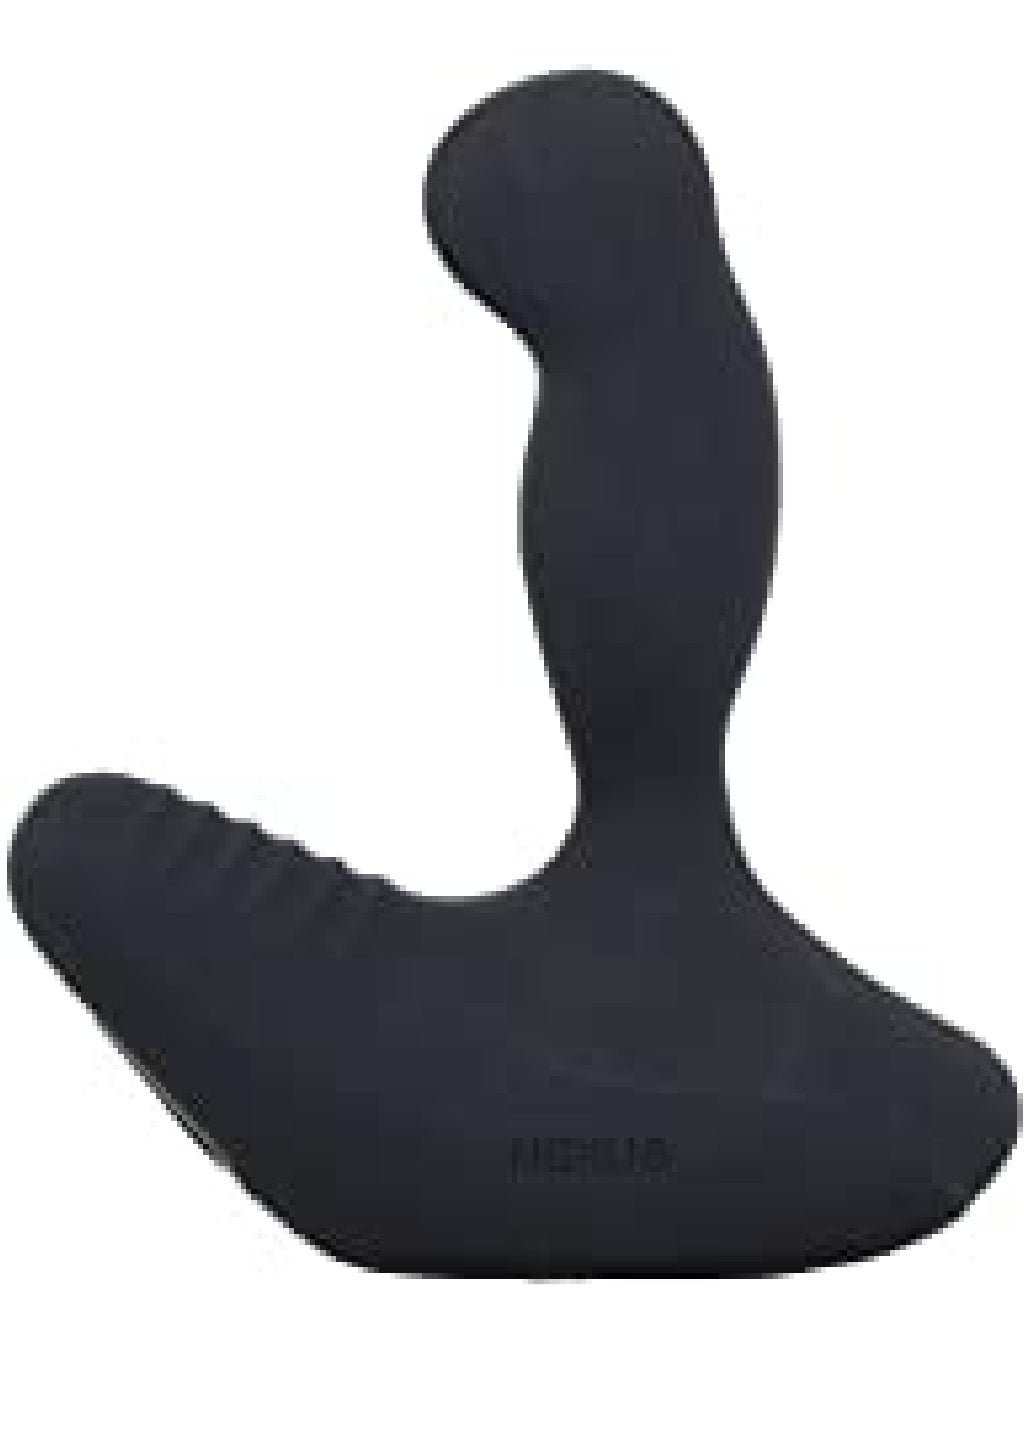 Buy Nexus Revo Waterproof Rotating Prostate Massager Black 